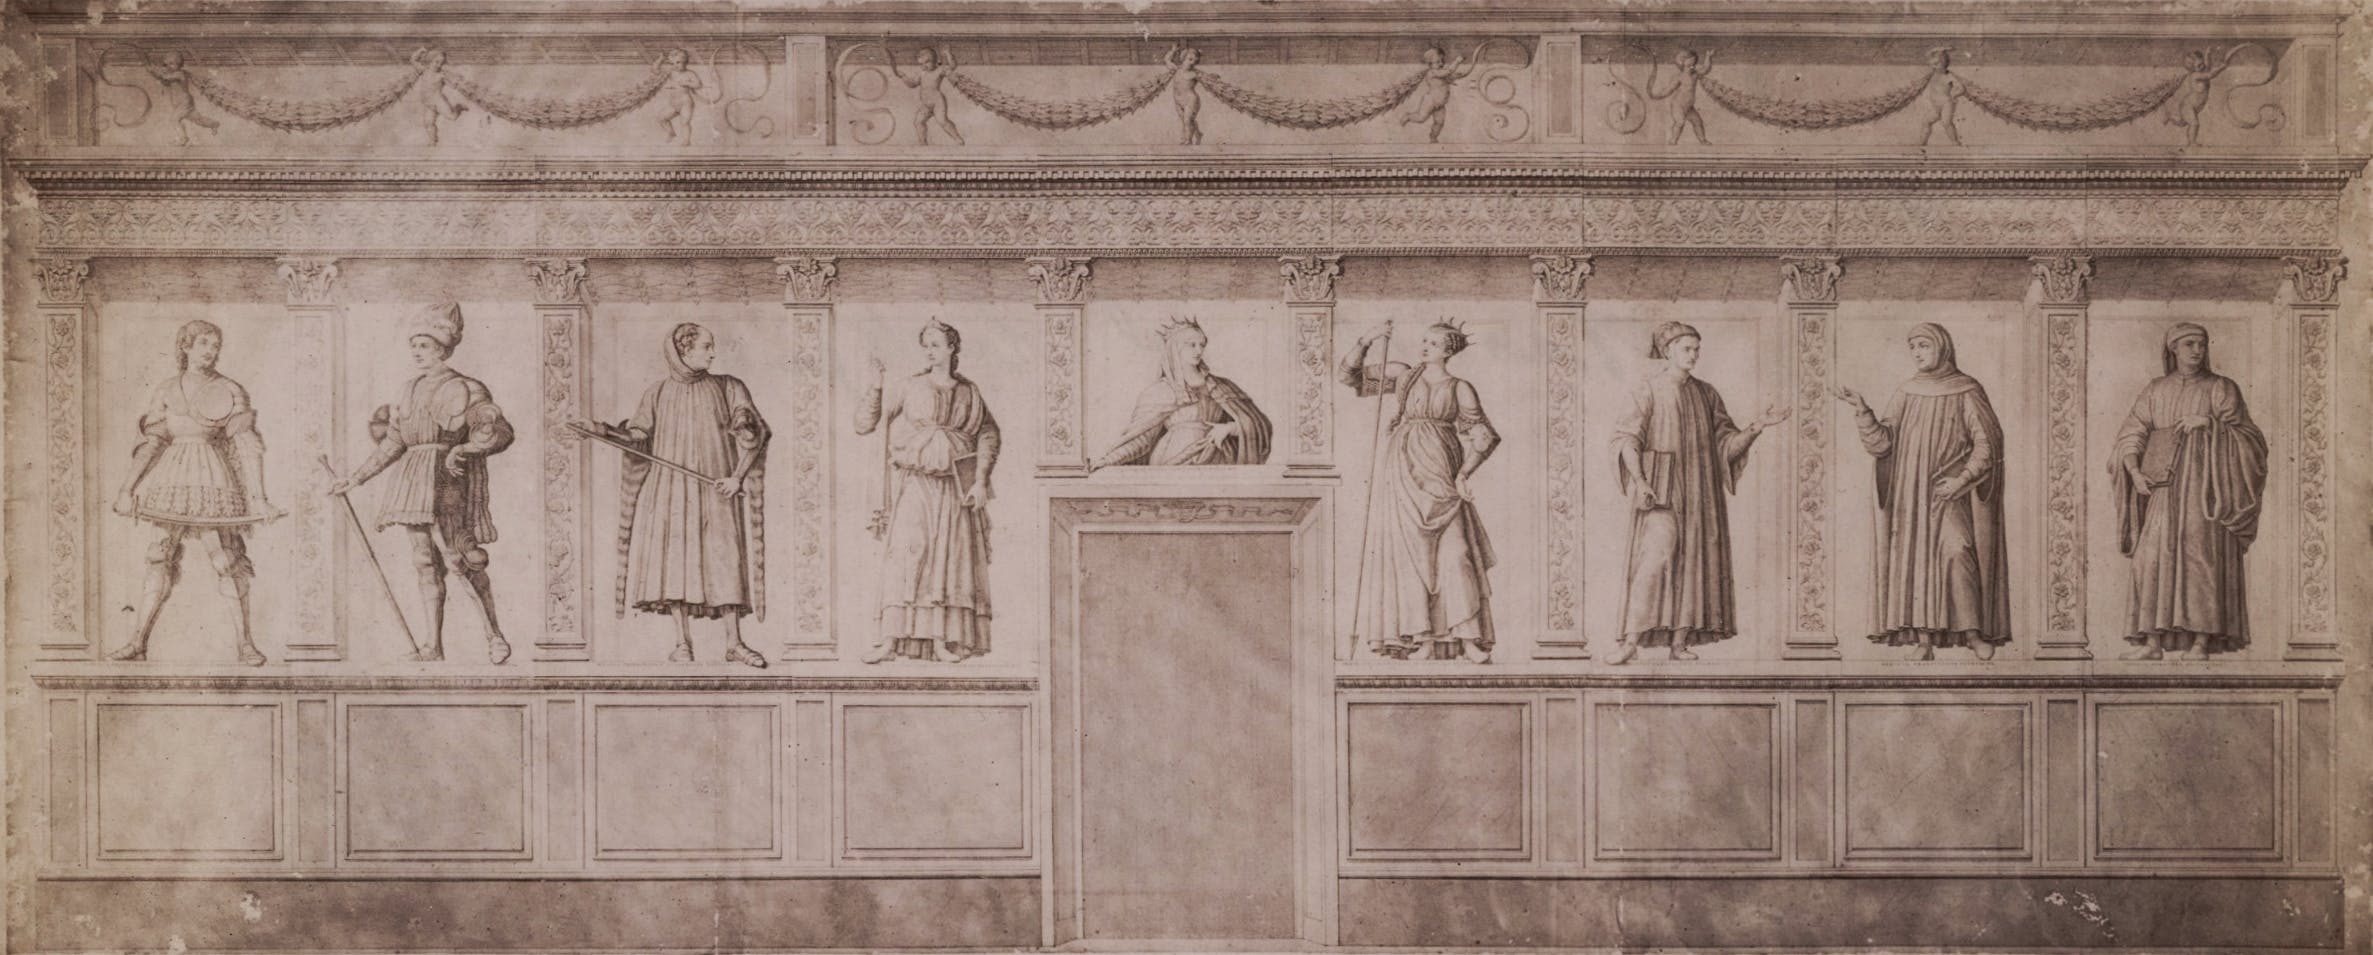 The Famous Men and Women of Andrea del Castagno in the Uffizi Gallery.